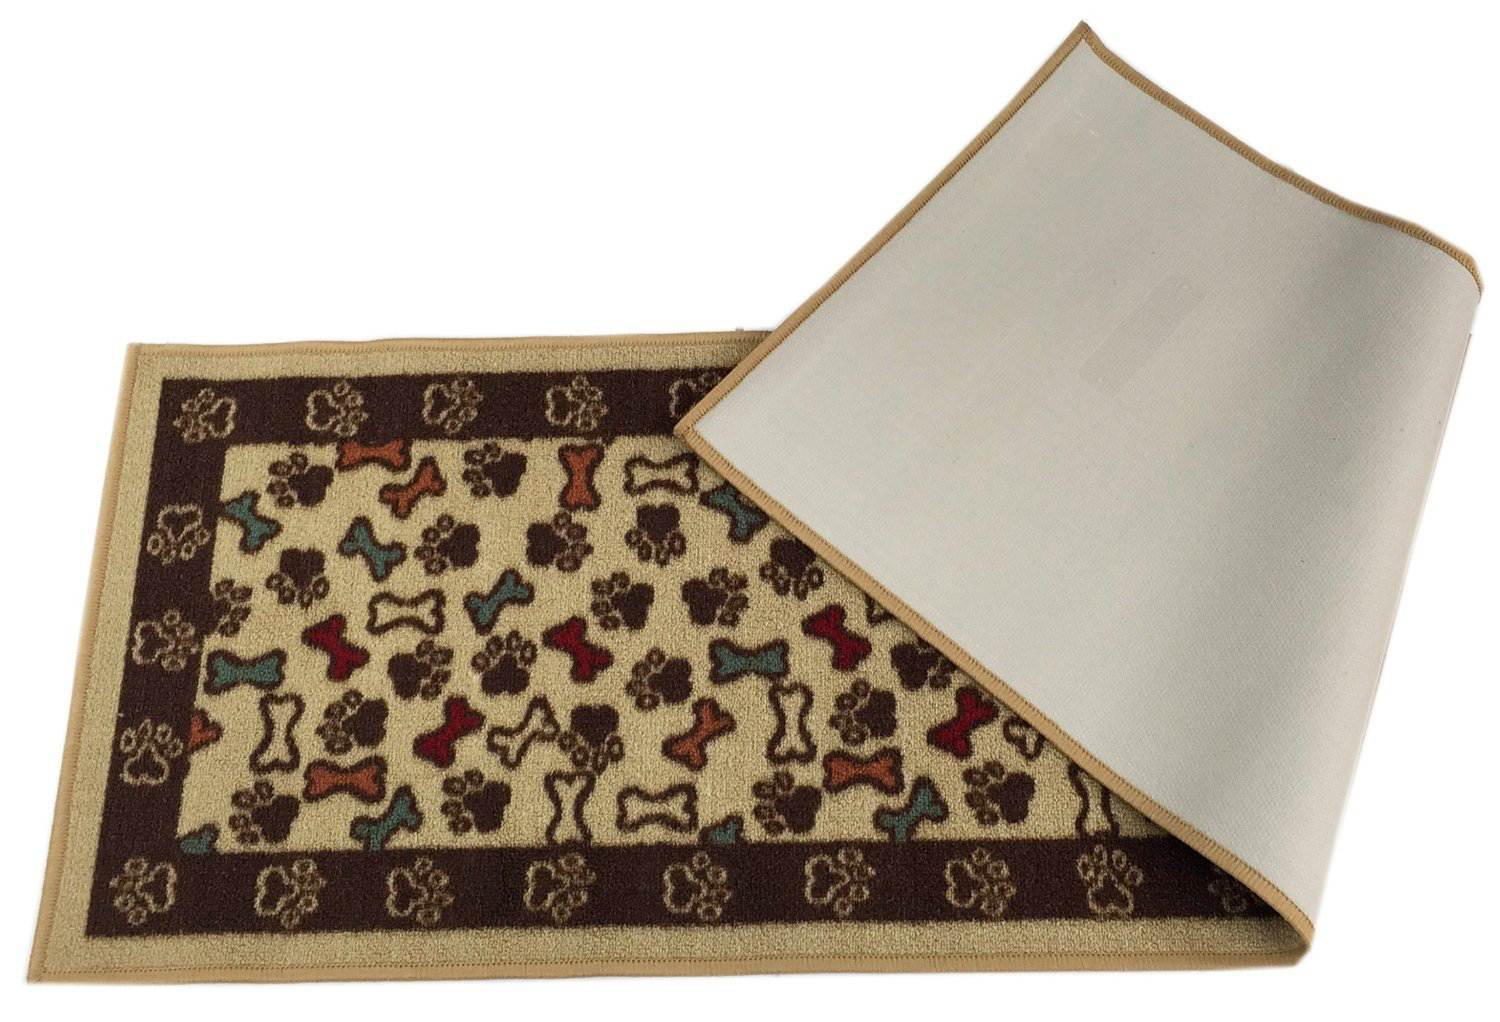 https://assets.wfcdn.com/im/47816612/compr-r85/9078/90780057/pet-design-pet-paw-beige-slip-resistant-indoor-machine-washable-door-mat-and-runner-rugs.jpg